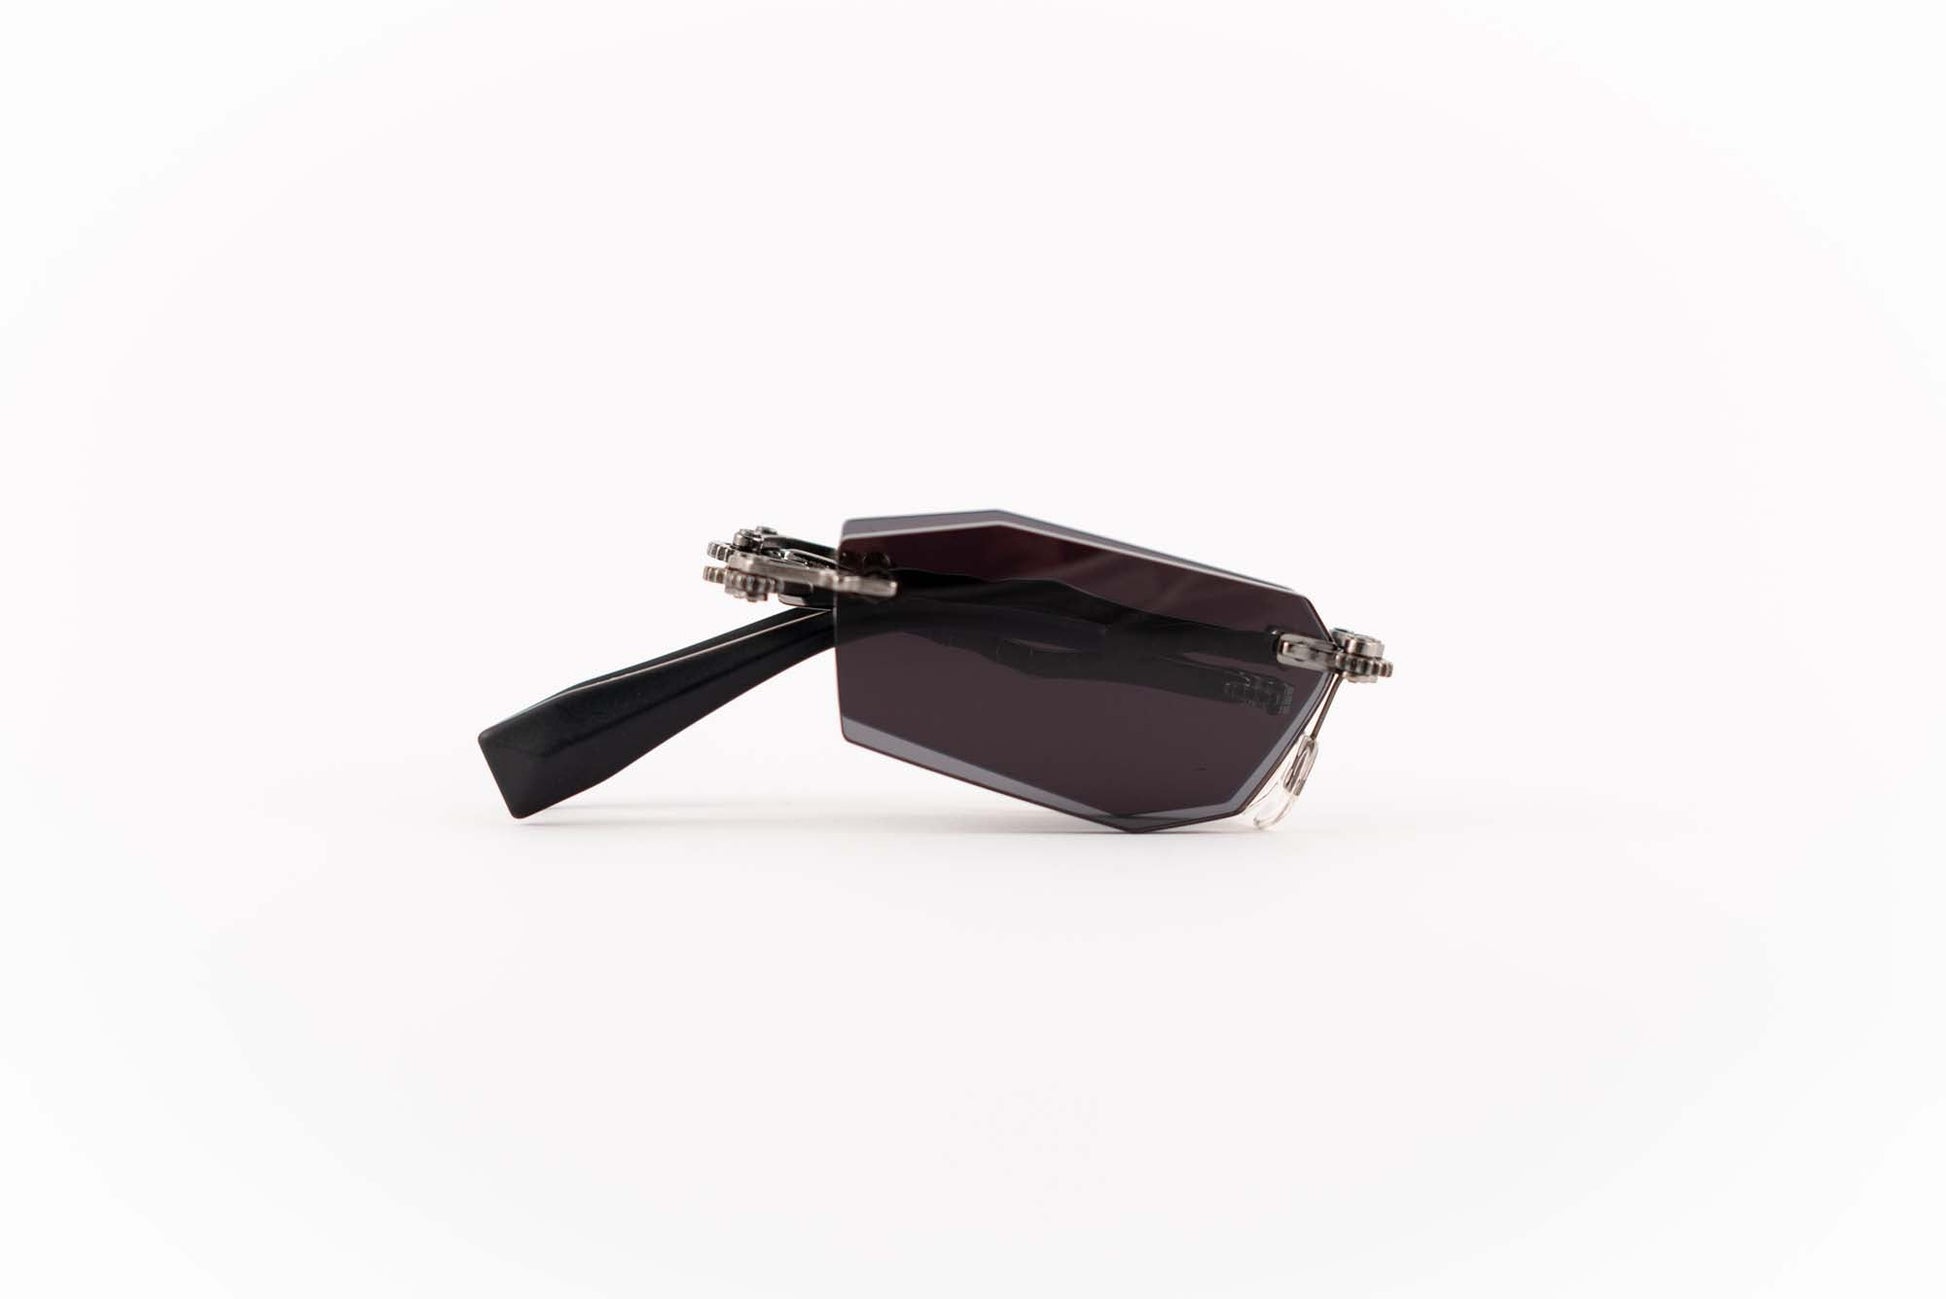 Kuboraum Occhiali da sole Nero / Metallo / Poligonale Kuboraum Maske H40 BB: occhiale a giorno glasant in metallo